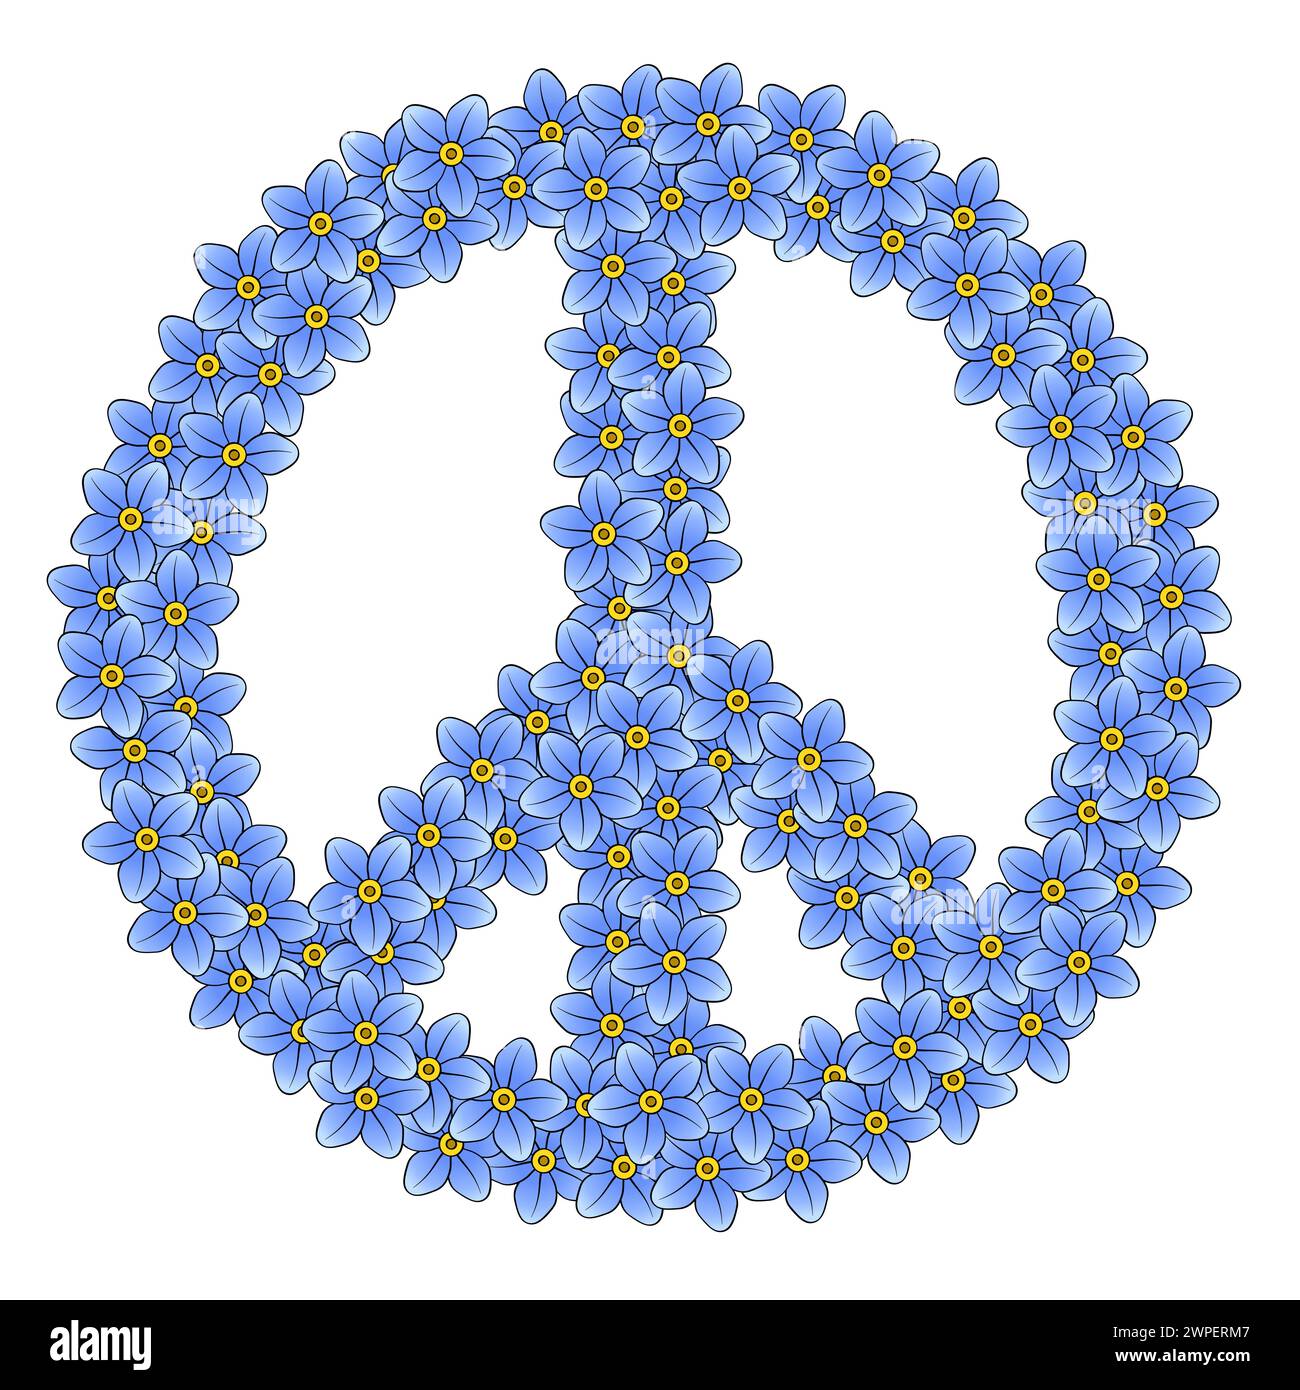 Segno di pace fatto di 111 fiori dimenticati. Realizzato con 111 fiori blu disposti a caso, simbolo del movimento anti-guerra. Foto Stock